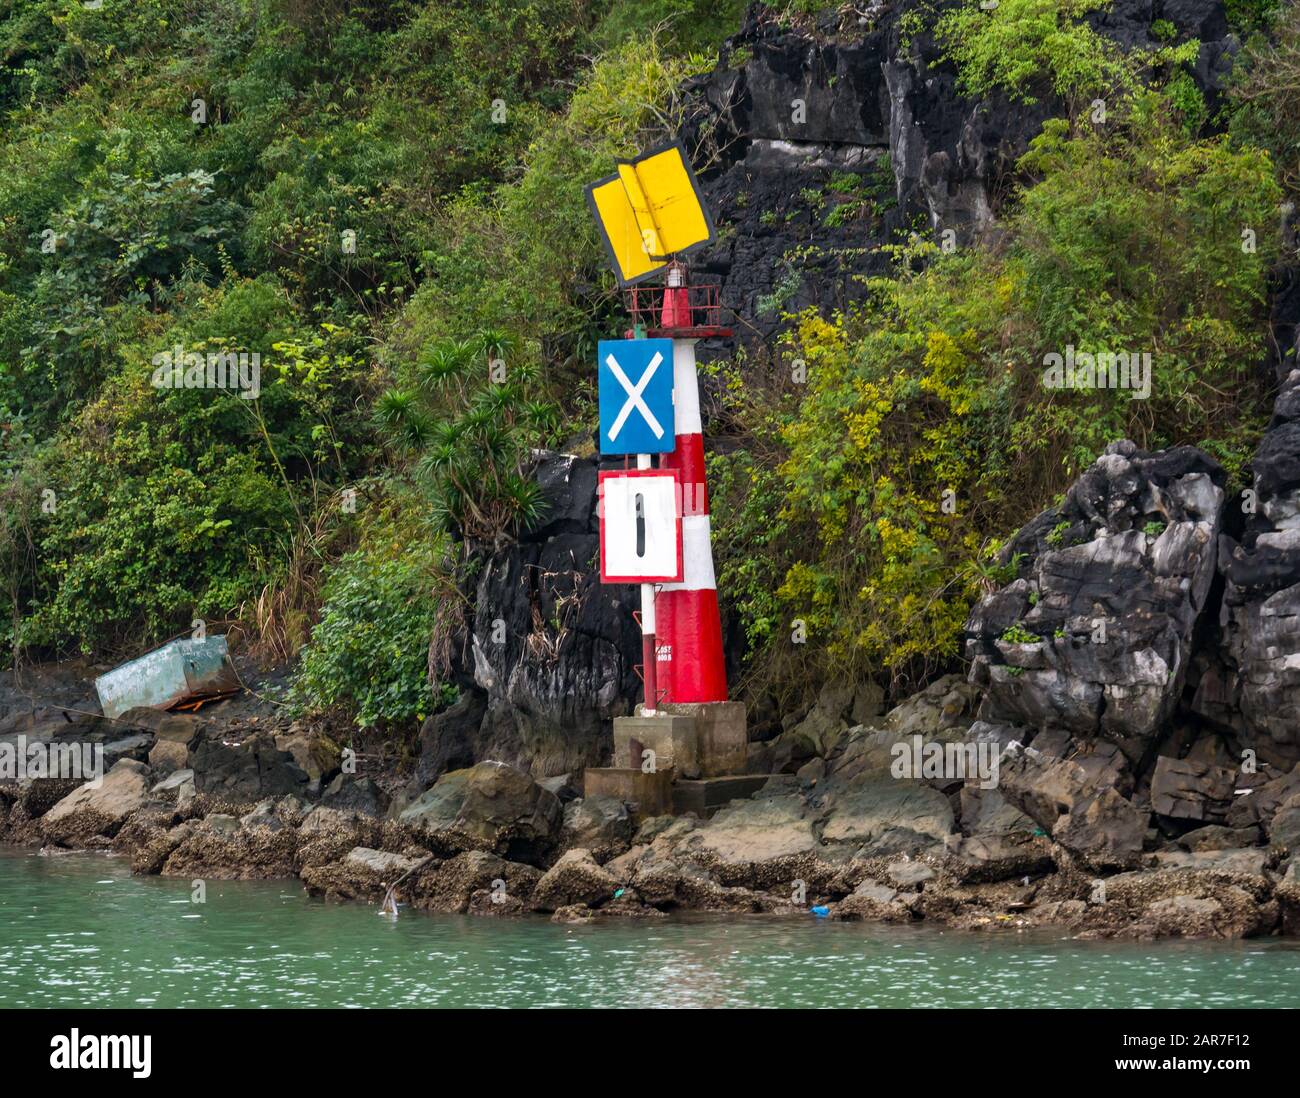 Marqueur de navigation sur les rives rocheuses, baie de Halong, Vietnam, Asie Banque D'Images